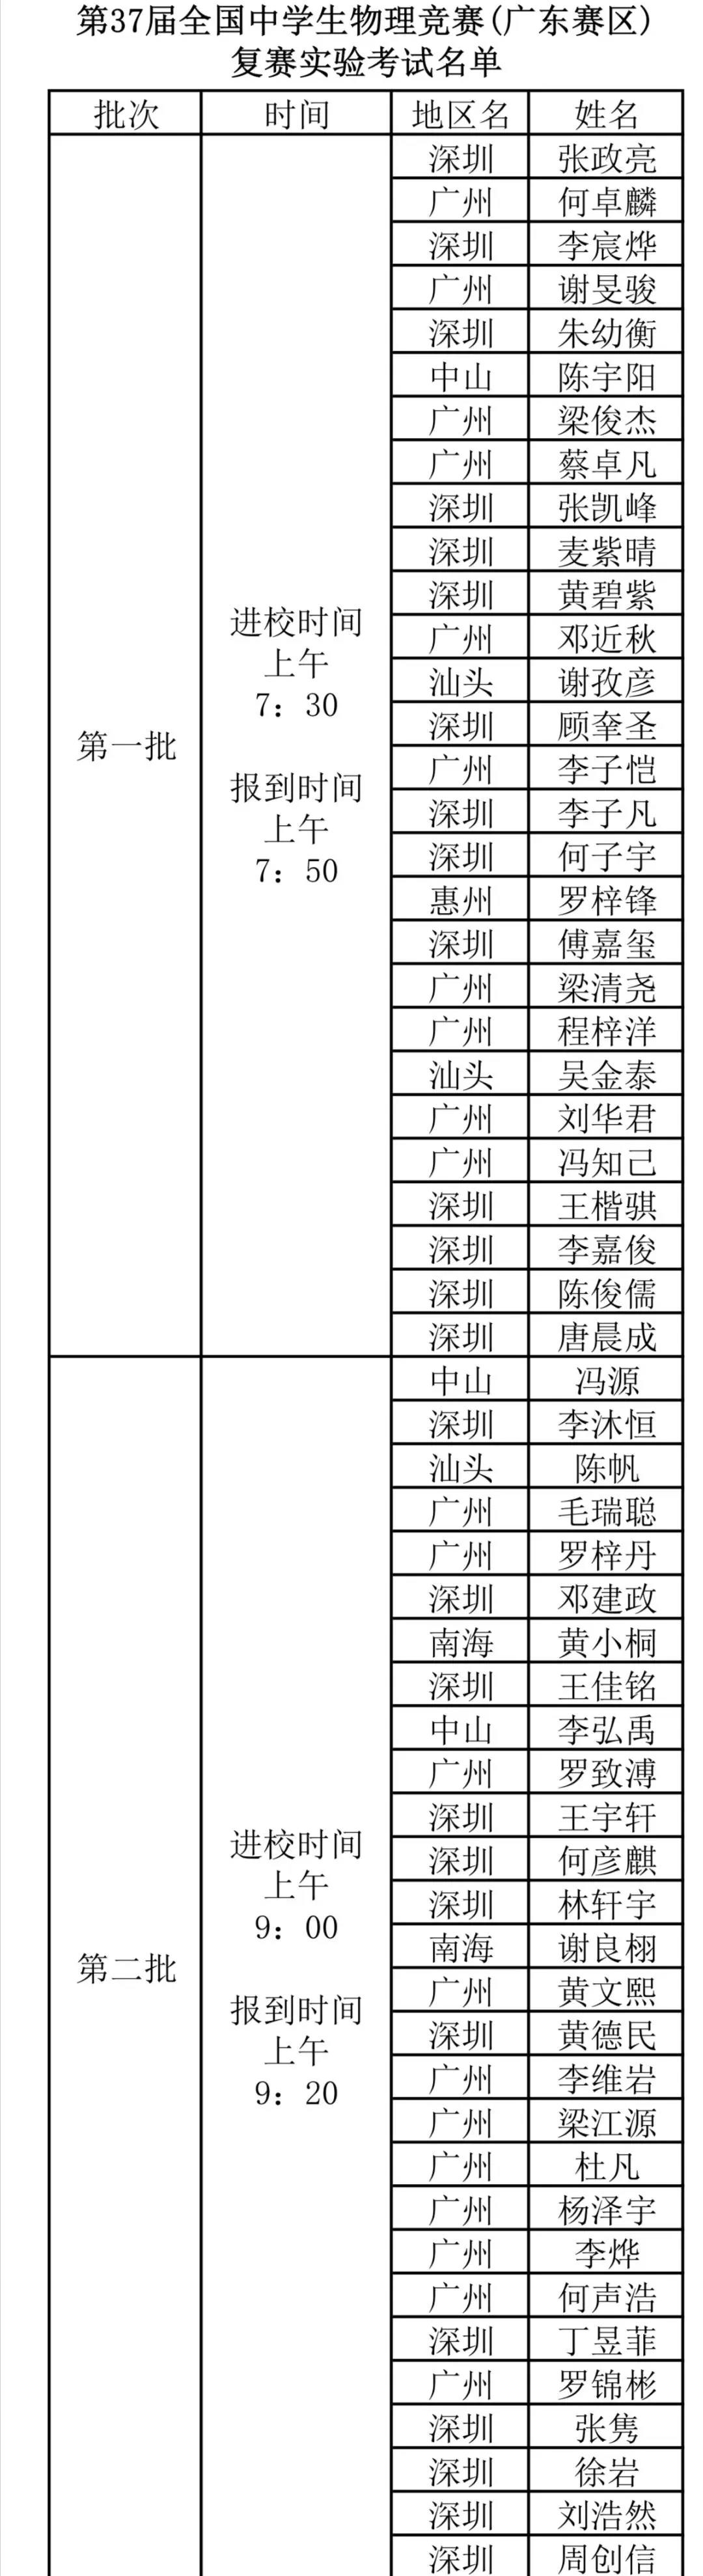 广东省2020年第37届全国中学生物理竞赛复赛实验参赛名单1